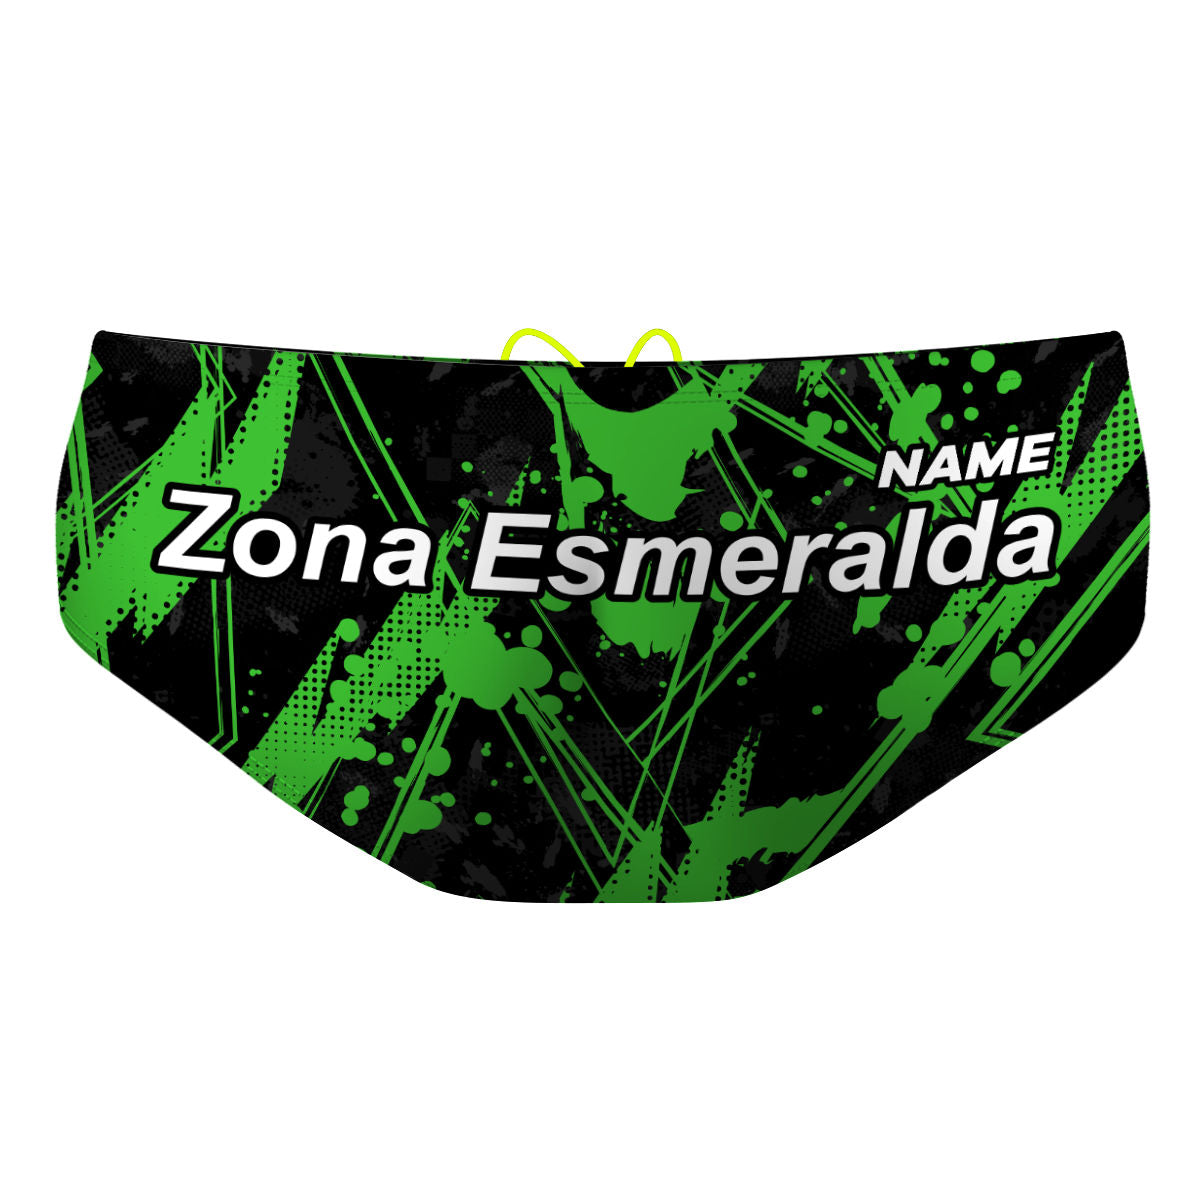 NV Zona Esmeralda - Classic Brief Swimsuit